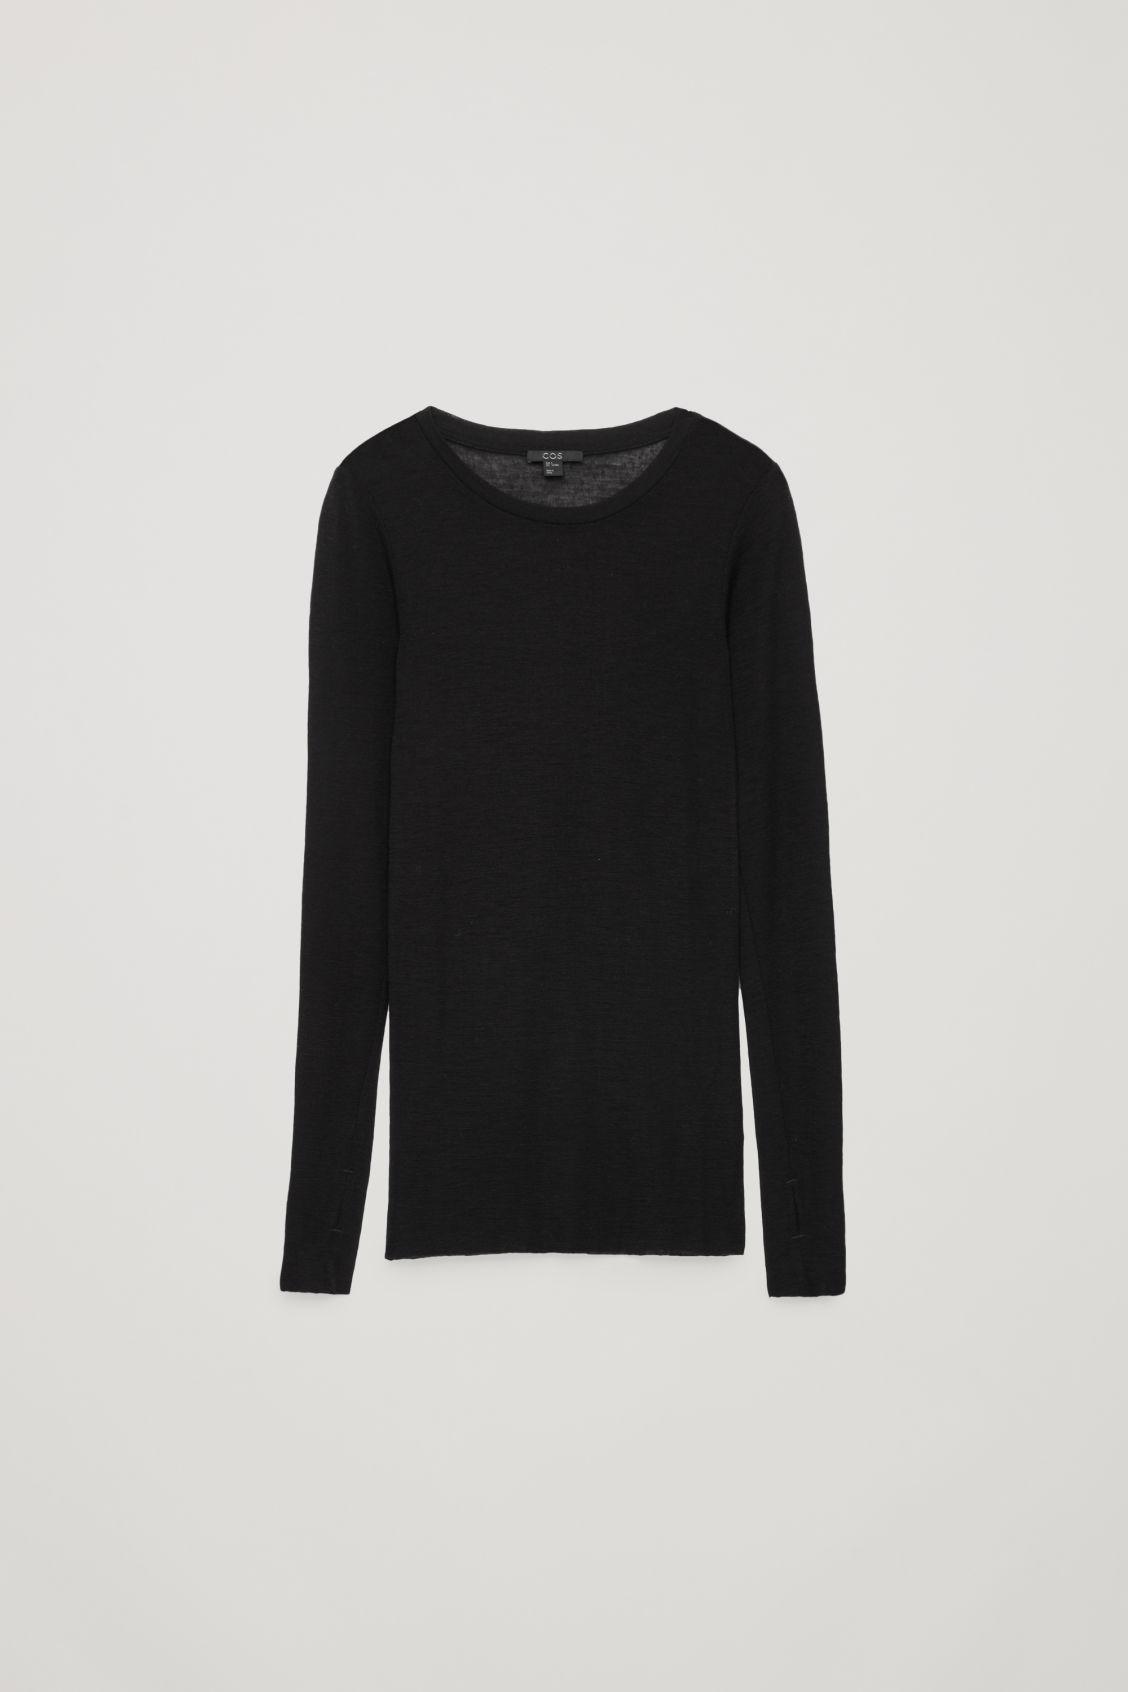 COS Sheer Wool Long-sleeved Top in Black | Lyst